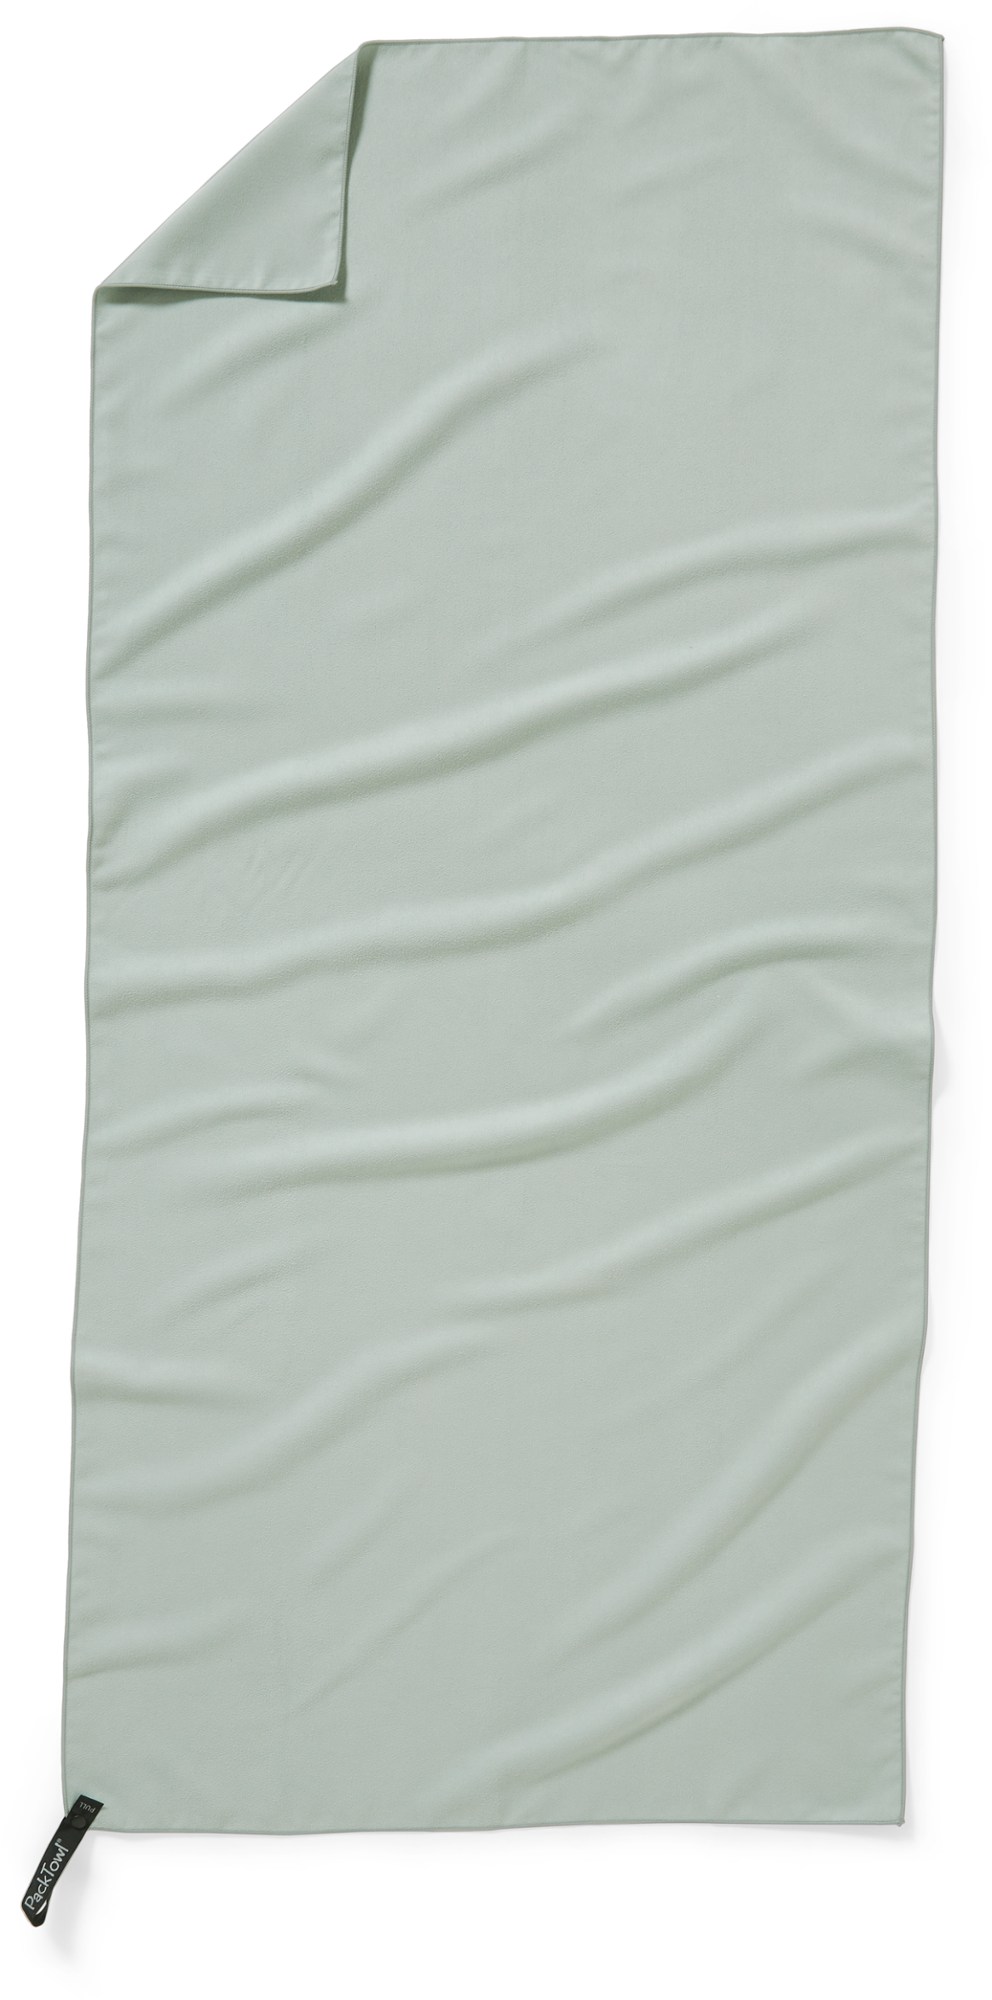 Личное полотенце PackTowl, зеленый полотенце для боулинга шариковое полотенце шарик для боулинга полотенце из микрофибры полотенце для боулинга полотенце для боулинга очищ